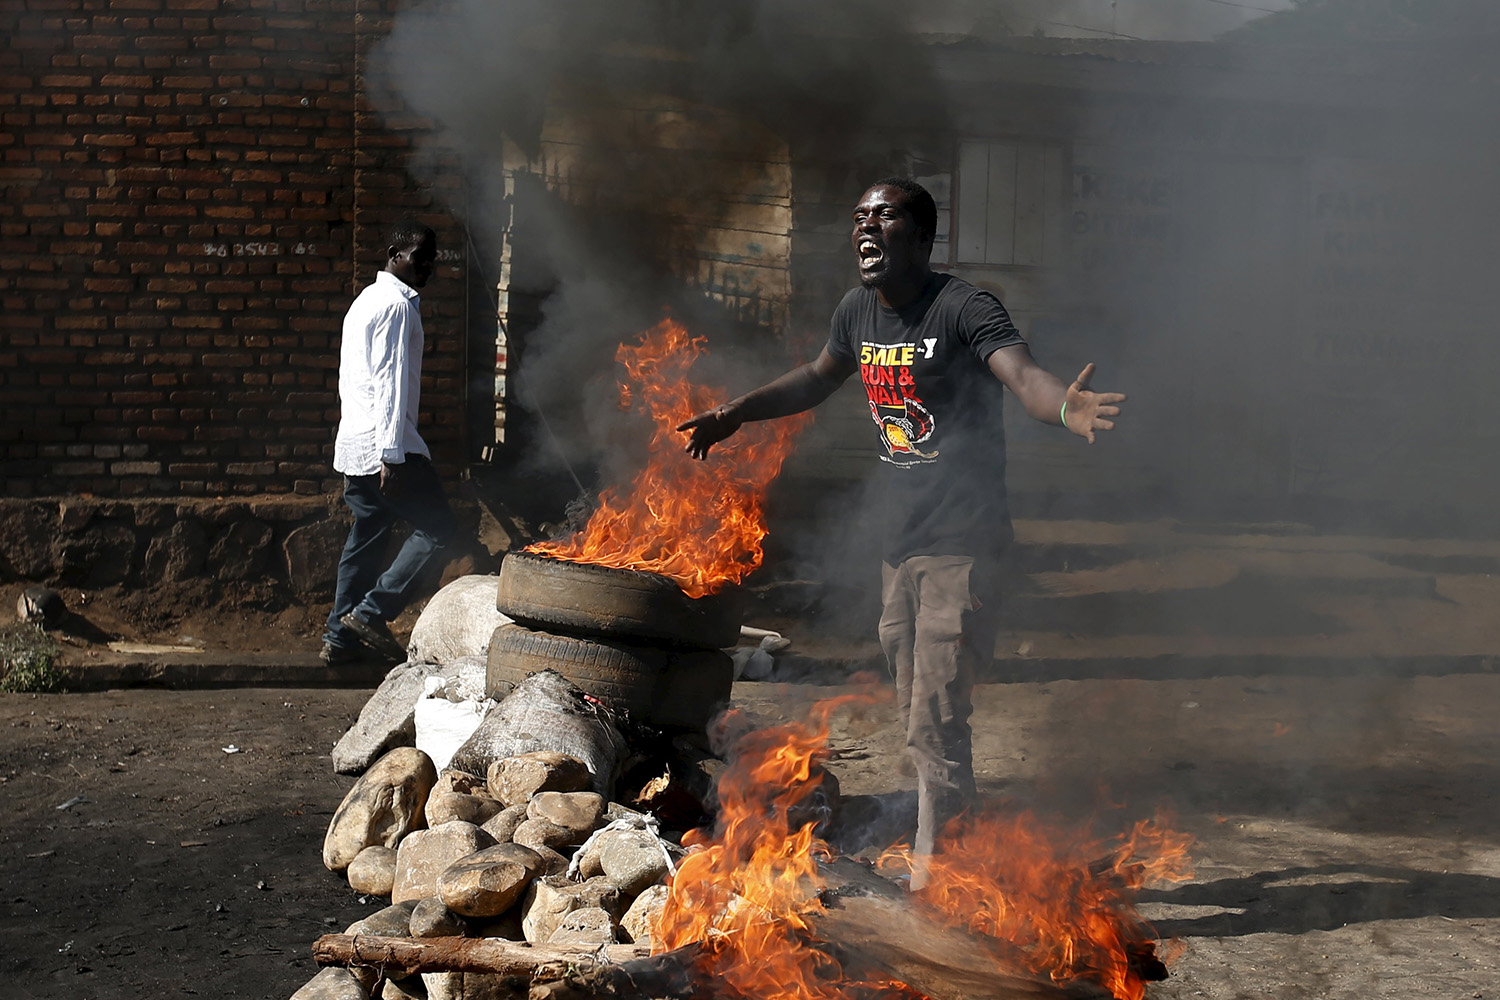 Caos y confusión por choques entre opositores y partidarios del presidente Nkurunziza